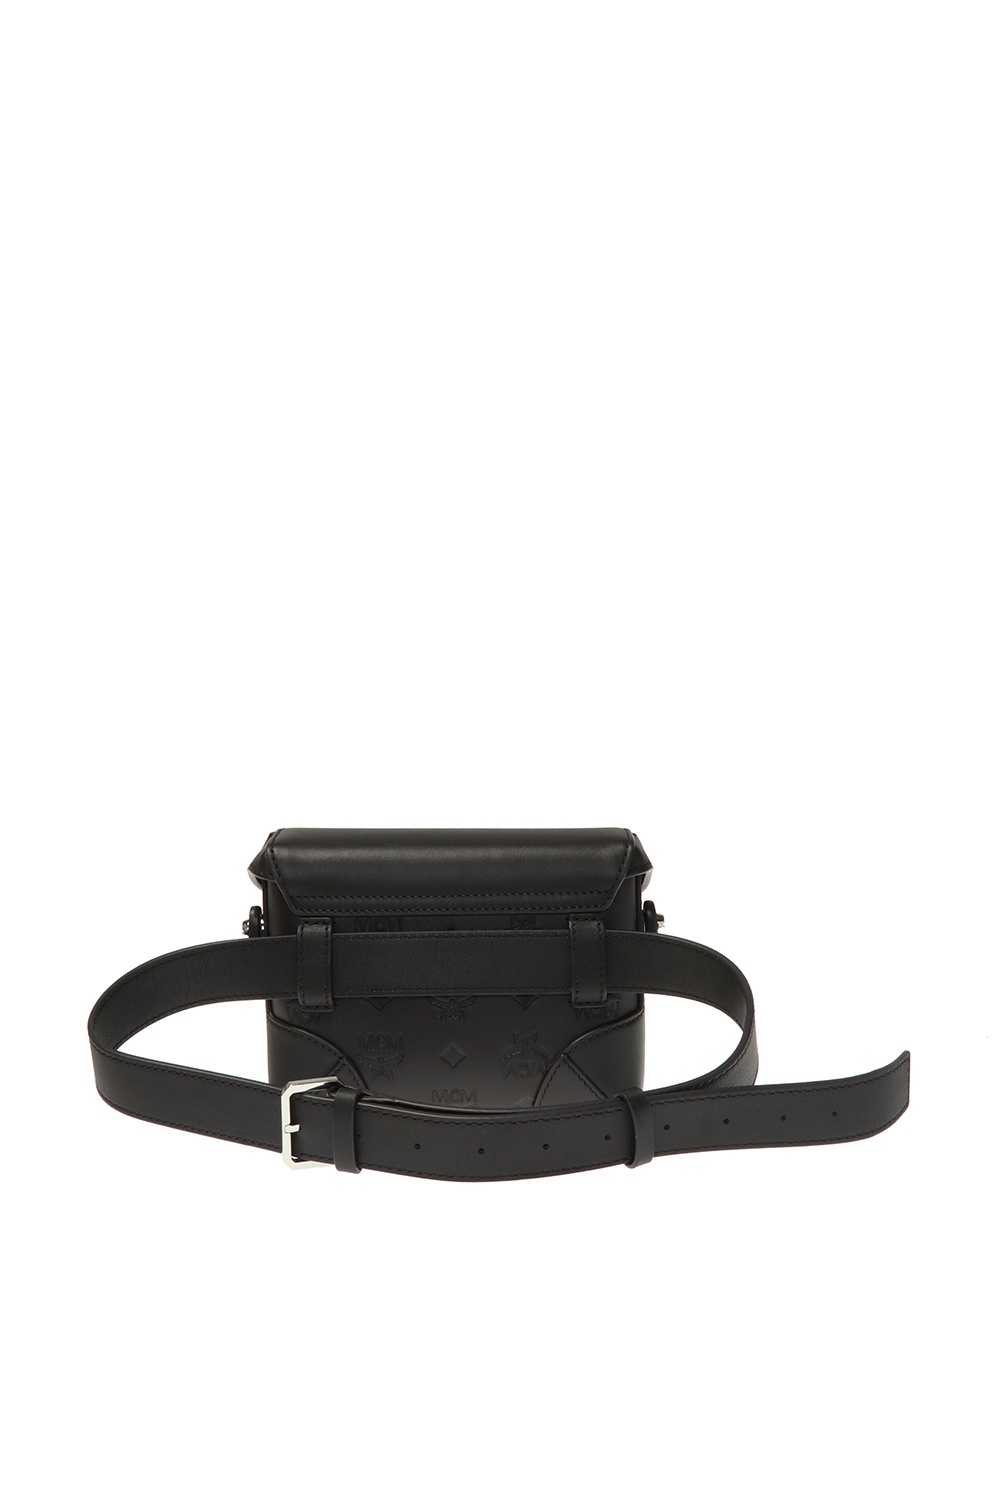 MCM Black Leather Chain-Link Shoulder Bag MCM